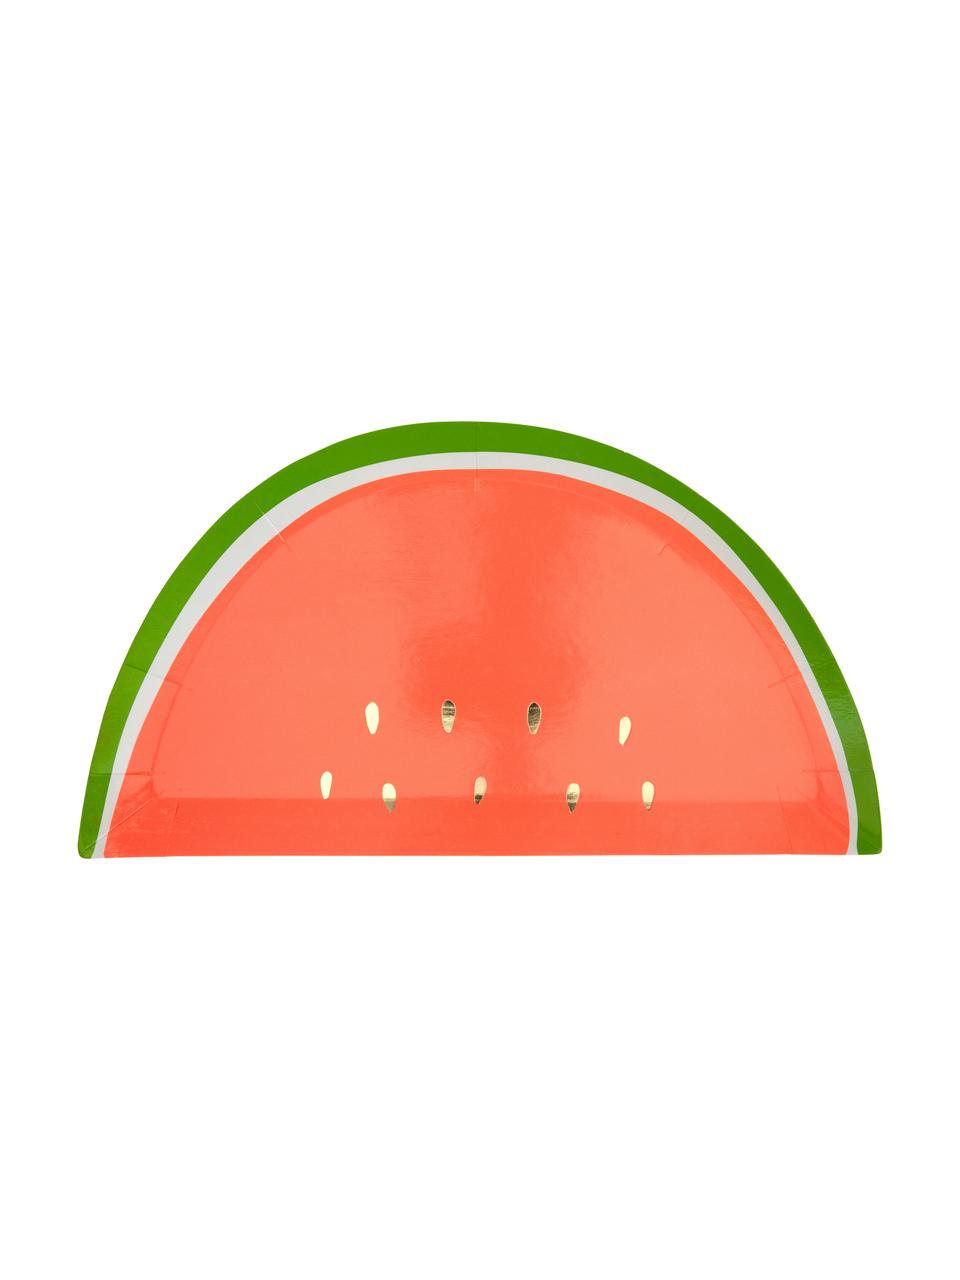 Papier-Teller Watermelon, 8 Stück, Papier, foliert, Rot, Grün, Goldfarben, B 28 x T 15 cm